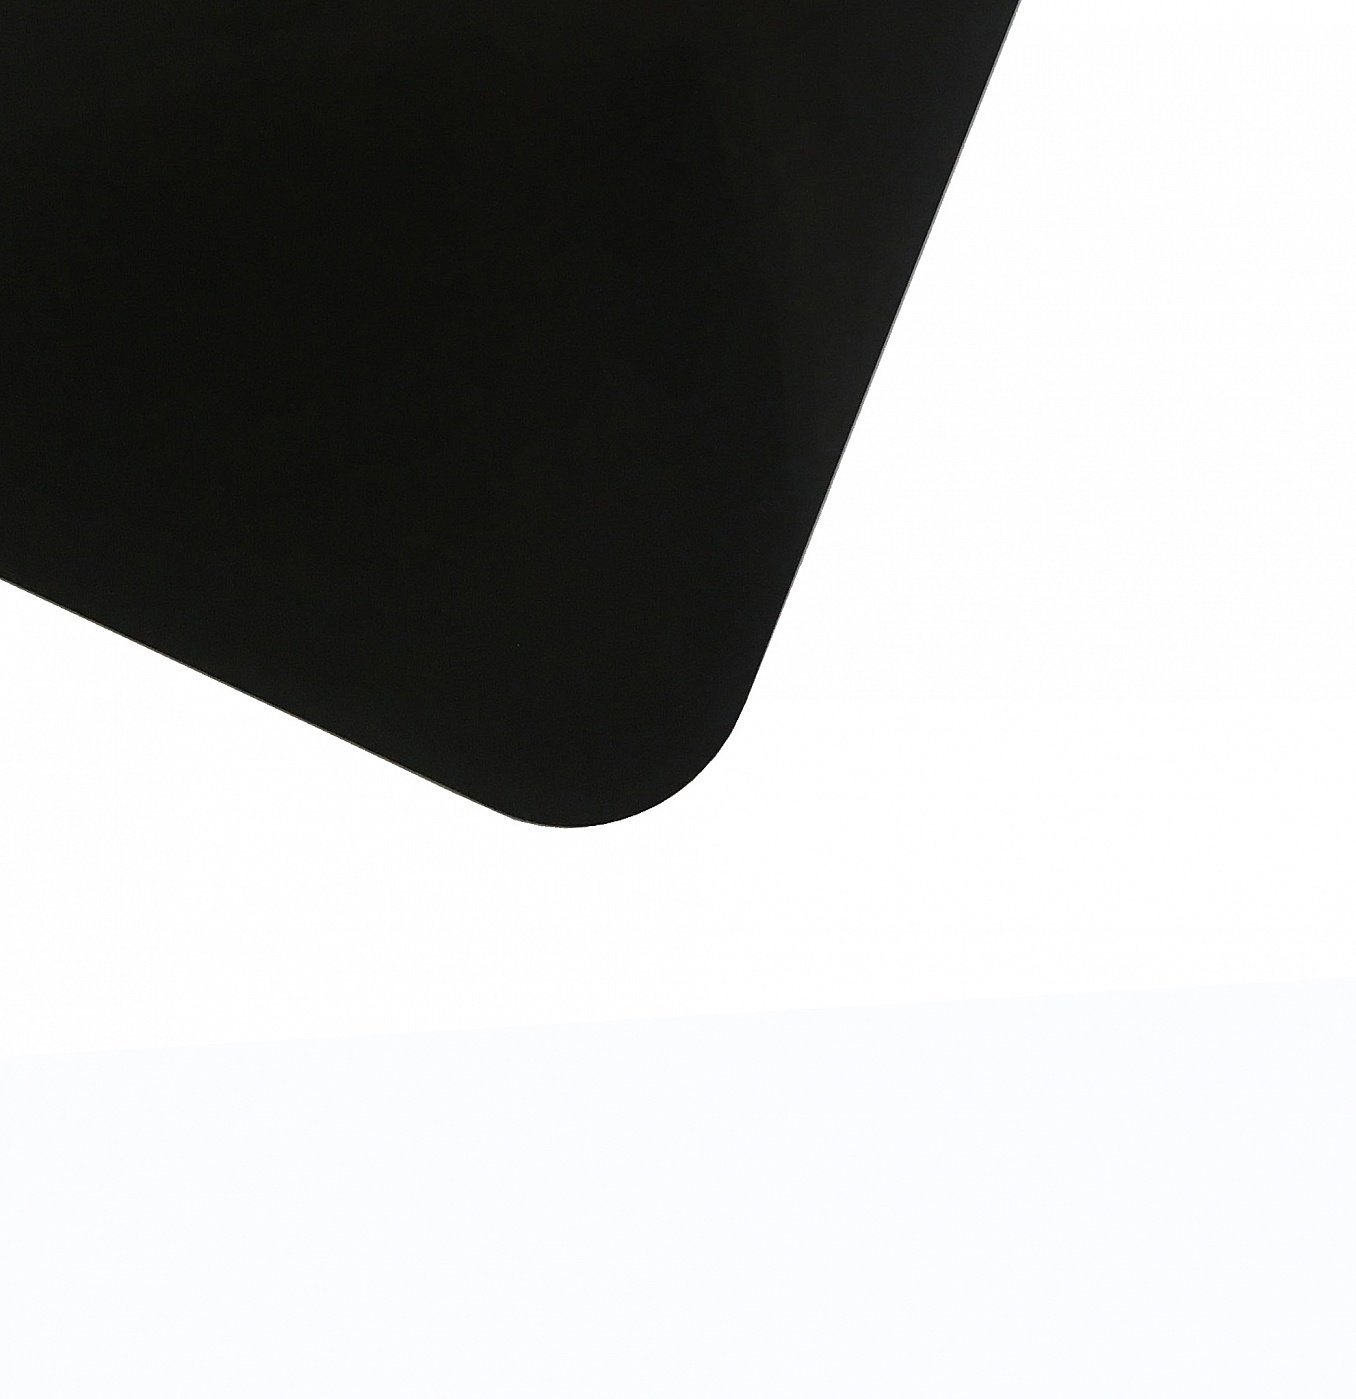 Планшет для пленэра из оргстекла 3 мм, под лист размера А4, цвет черный david jones сумка планшет